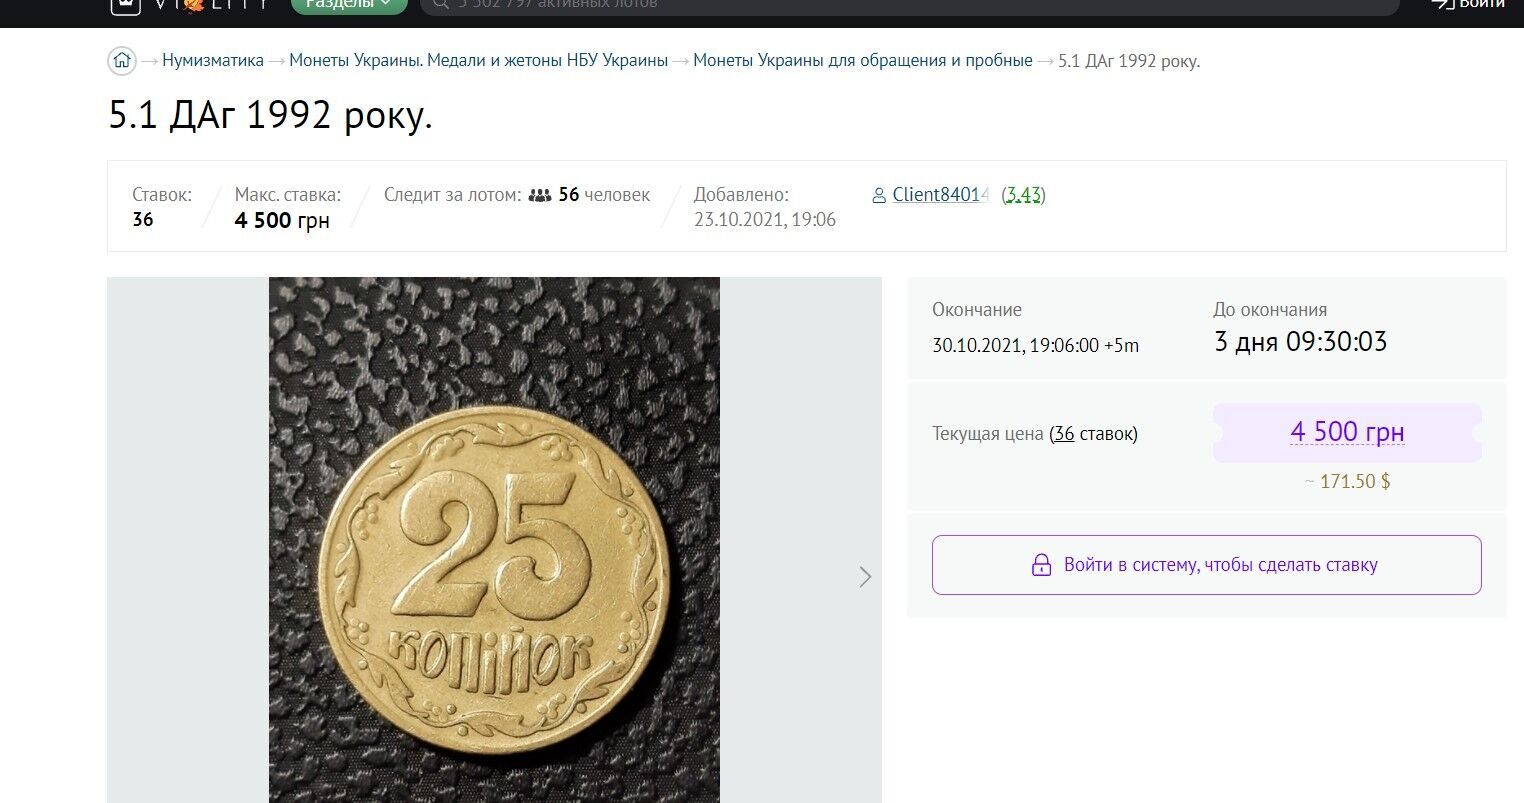 Как выглядит монета номиналом в 25 копеек стоимостью в тысячи гривен